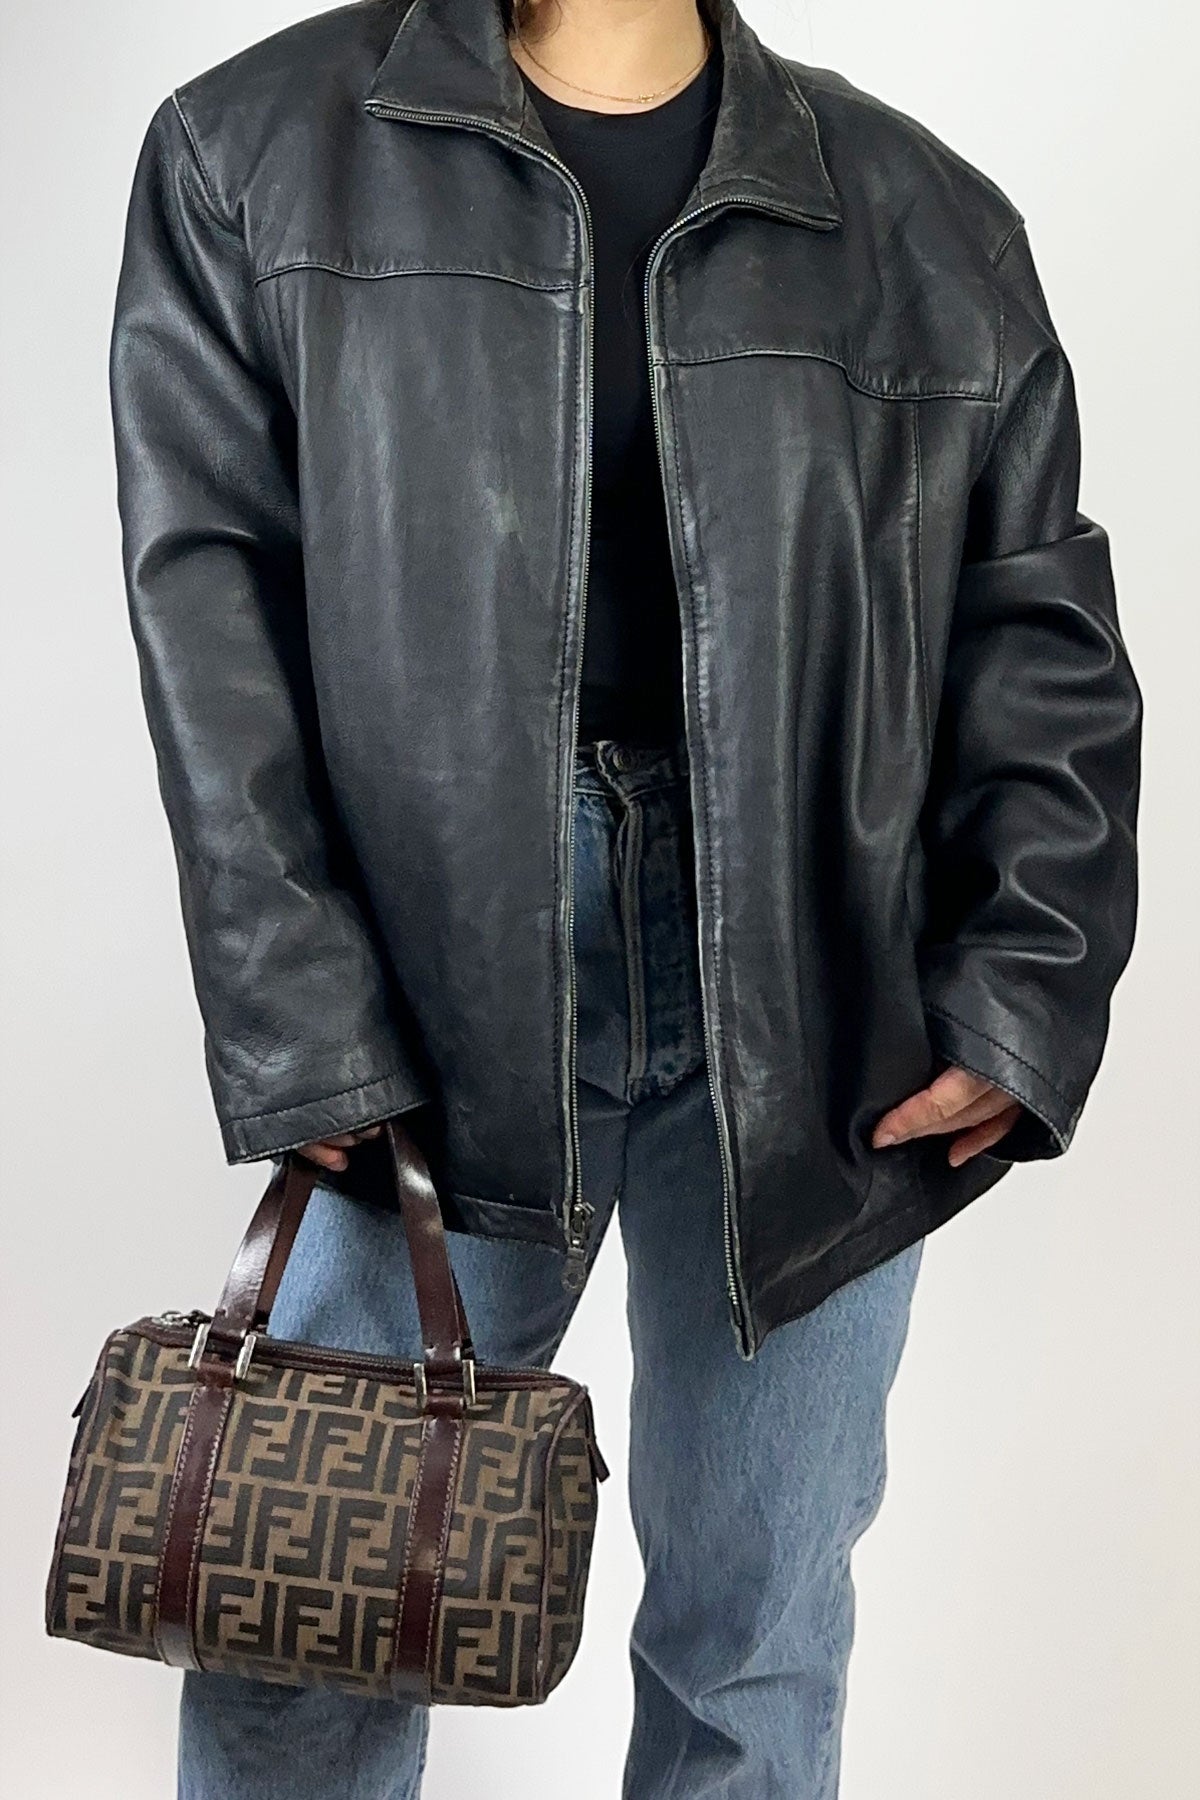 Men's Black Leather Jacket / Large - Jade Vintage